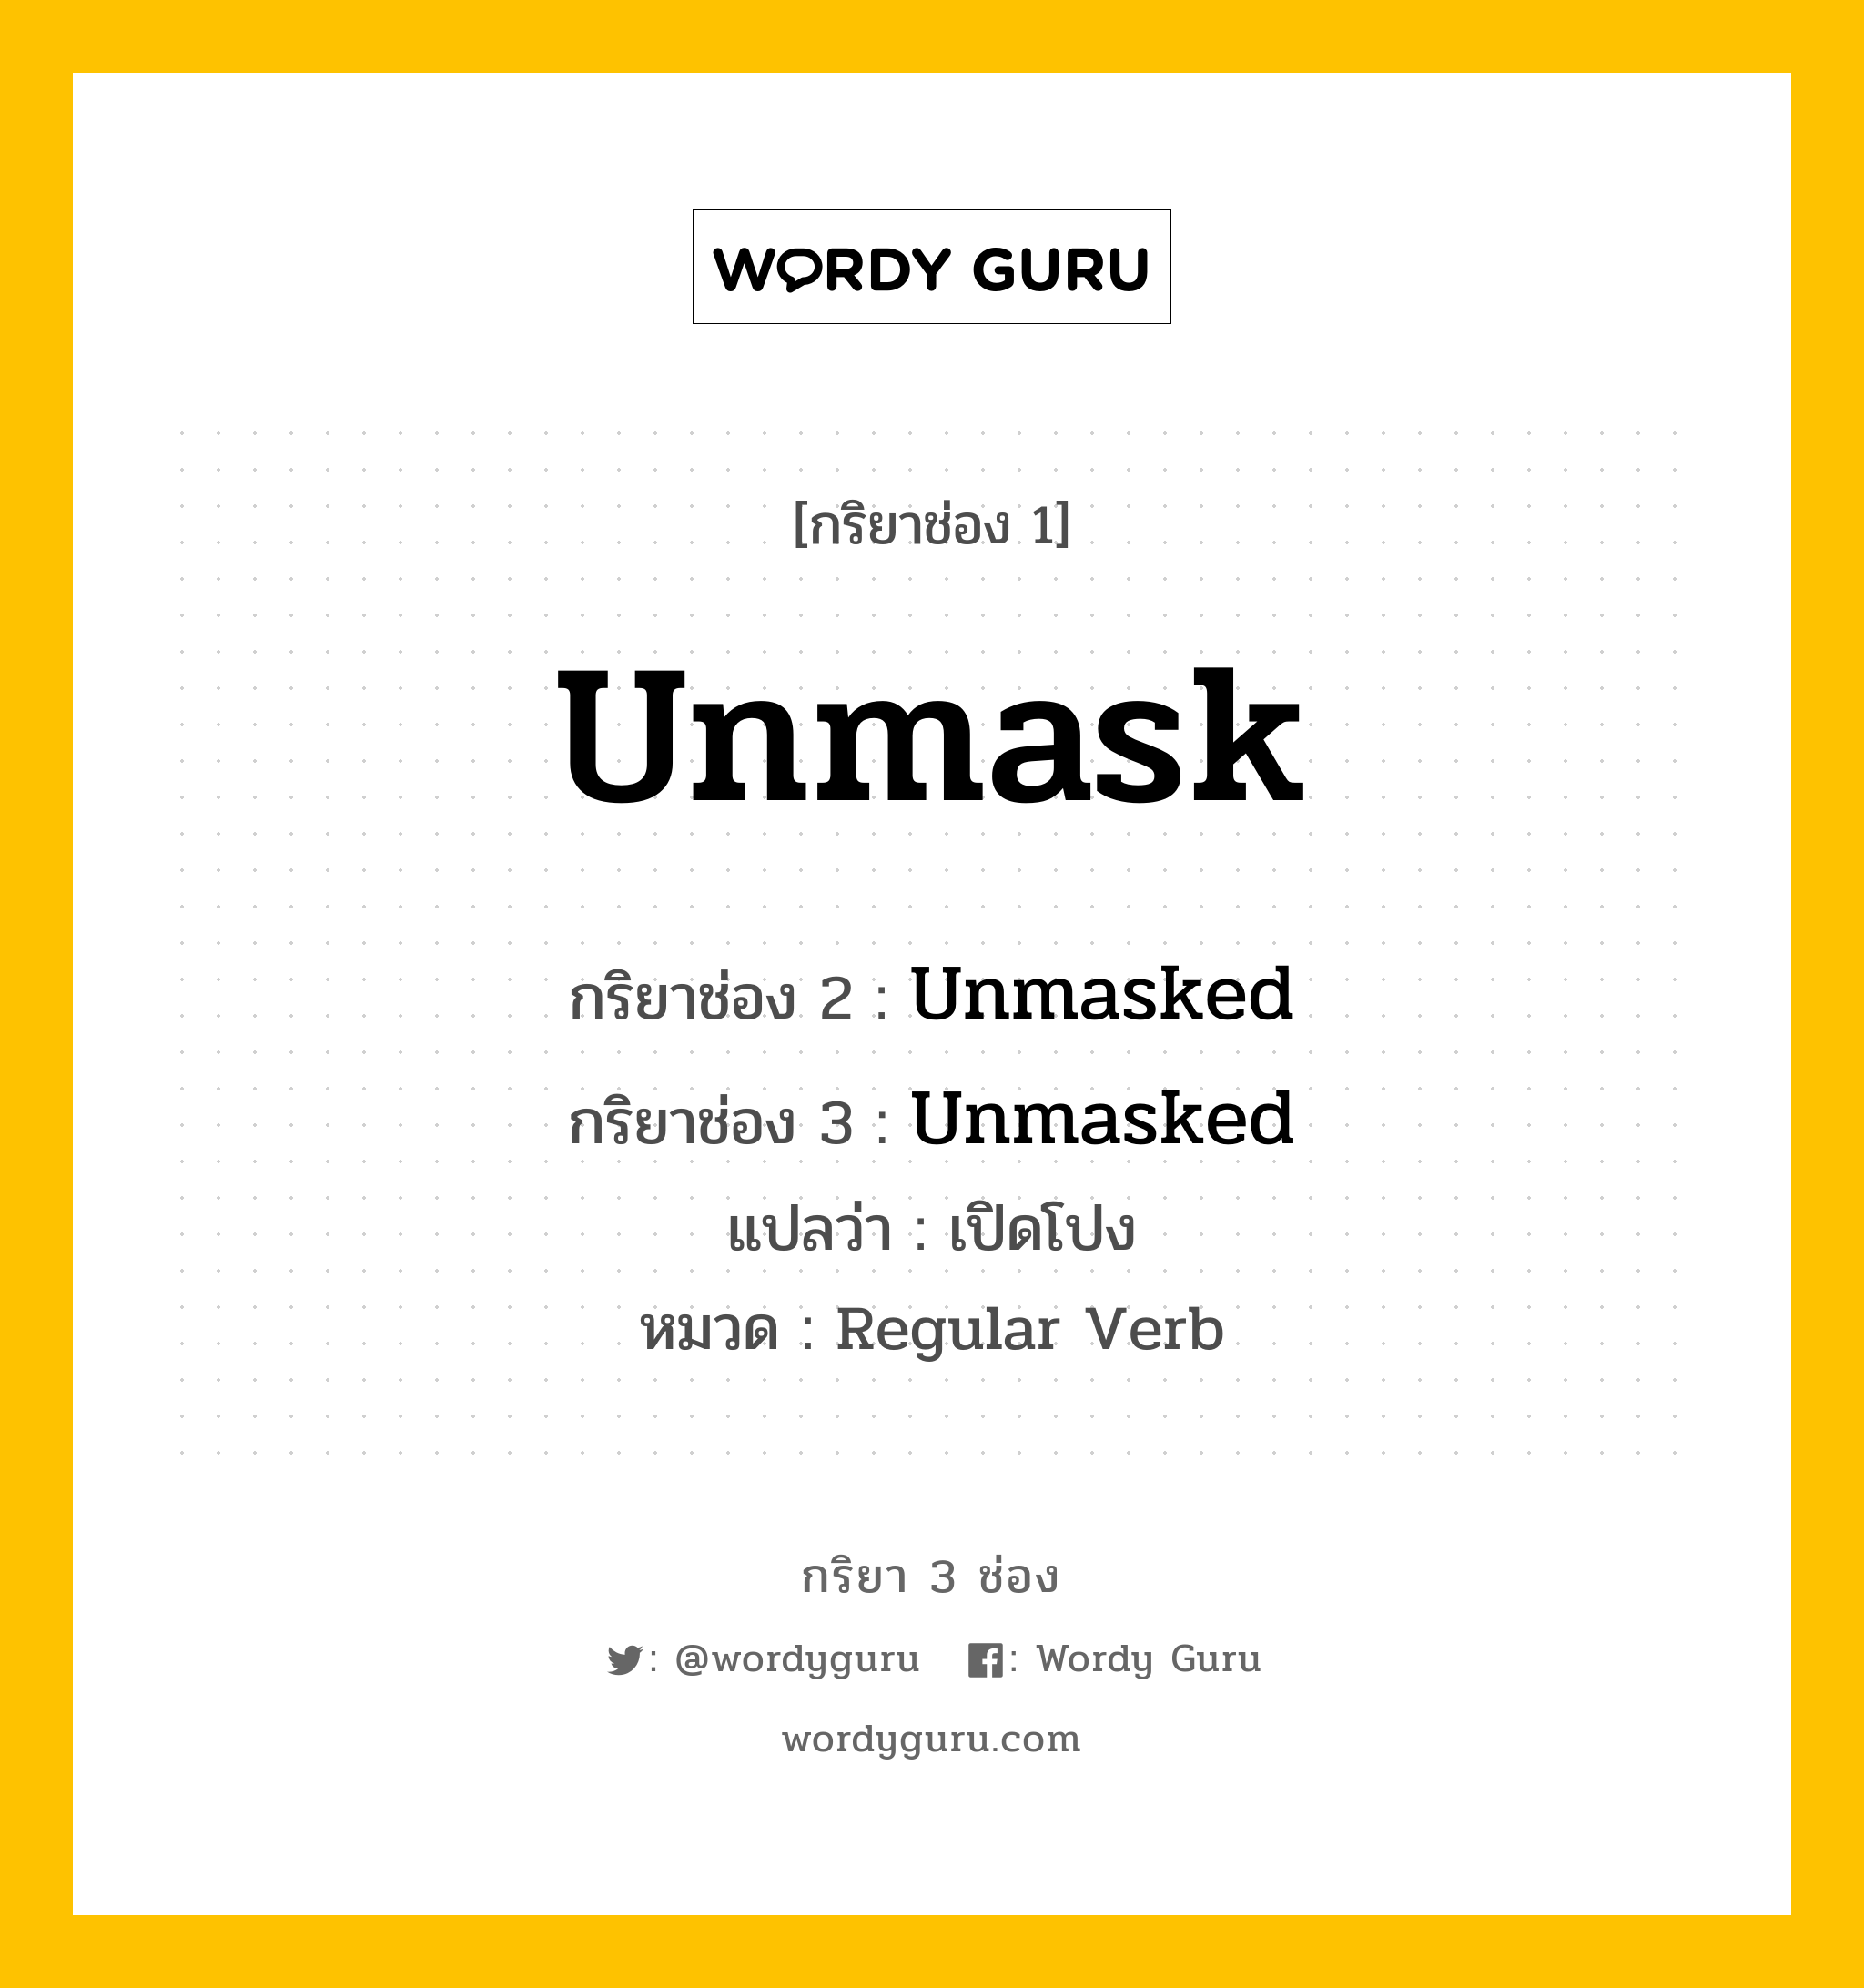 กริยา 3 ช่อง: Unmask ช่อง 2 Unmask ช่อง 3 คืออะไร, กริยาช่อง 1 Unmask กริยาช่อง 2 Unmasked กริยาช่อง 3 Unmasked แปลว่า เปิดโปง หมวด Regular Verb หมวด Regular Verb